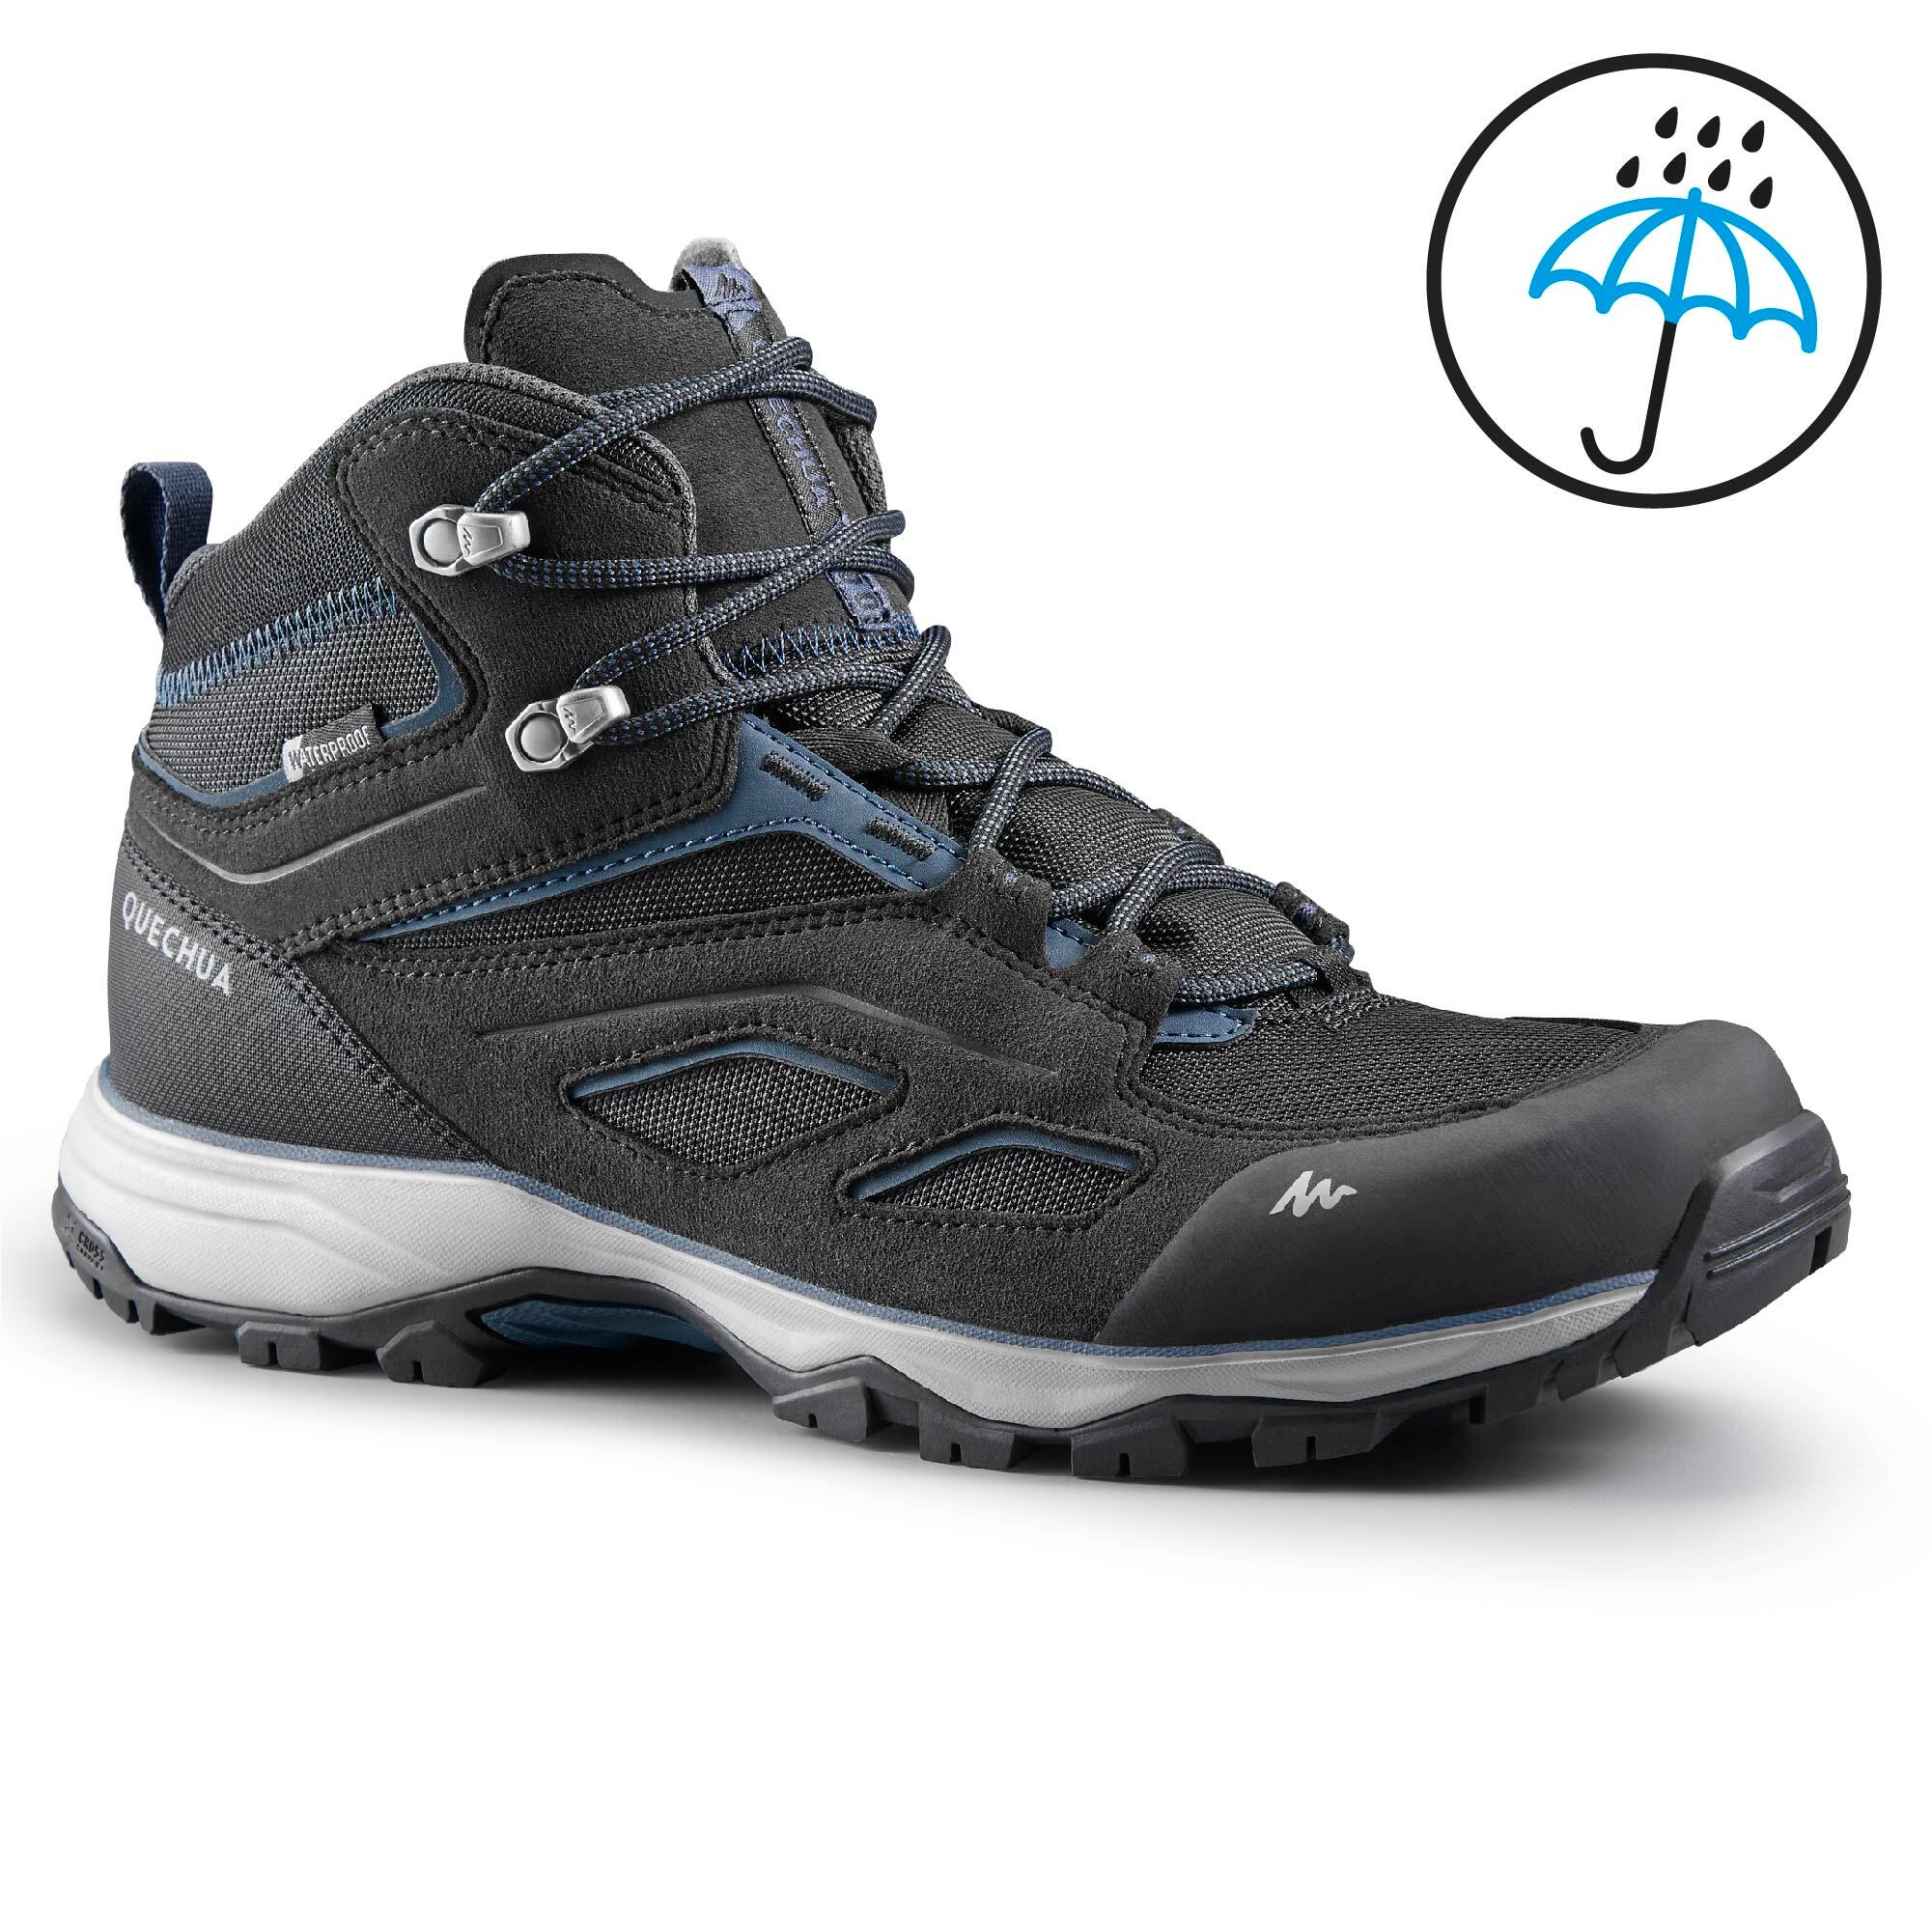 Hiking \u0026 Trekking Shoes |Buy Best Men 